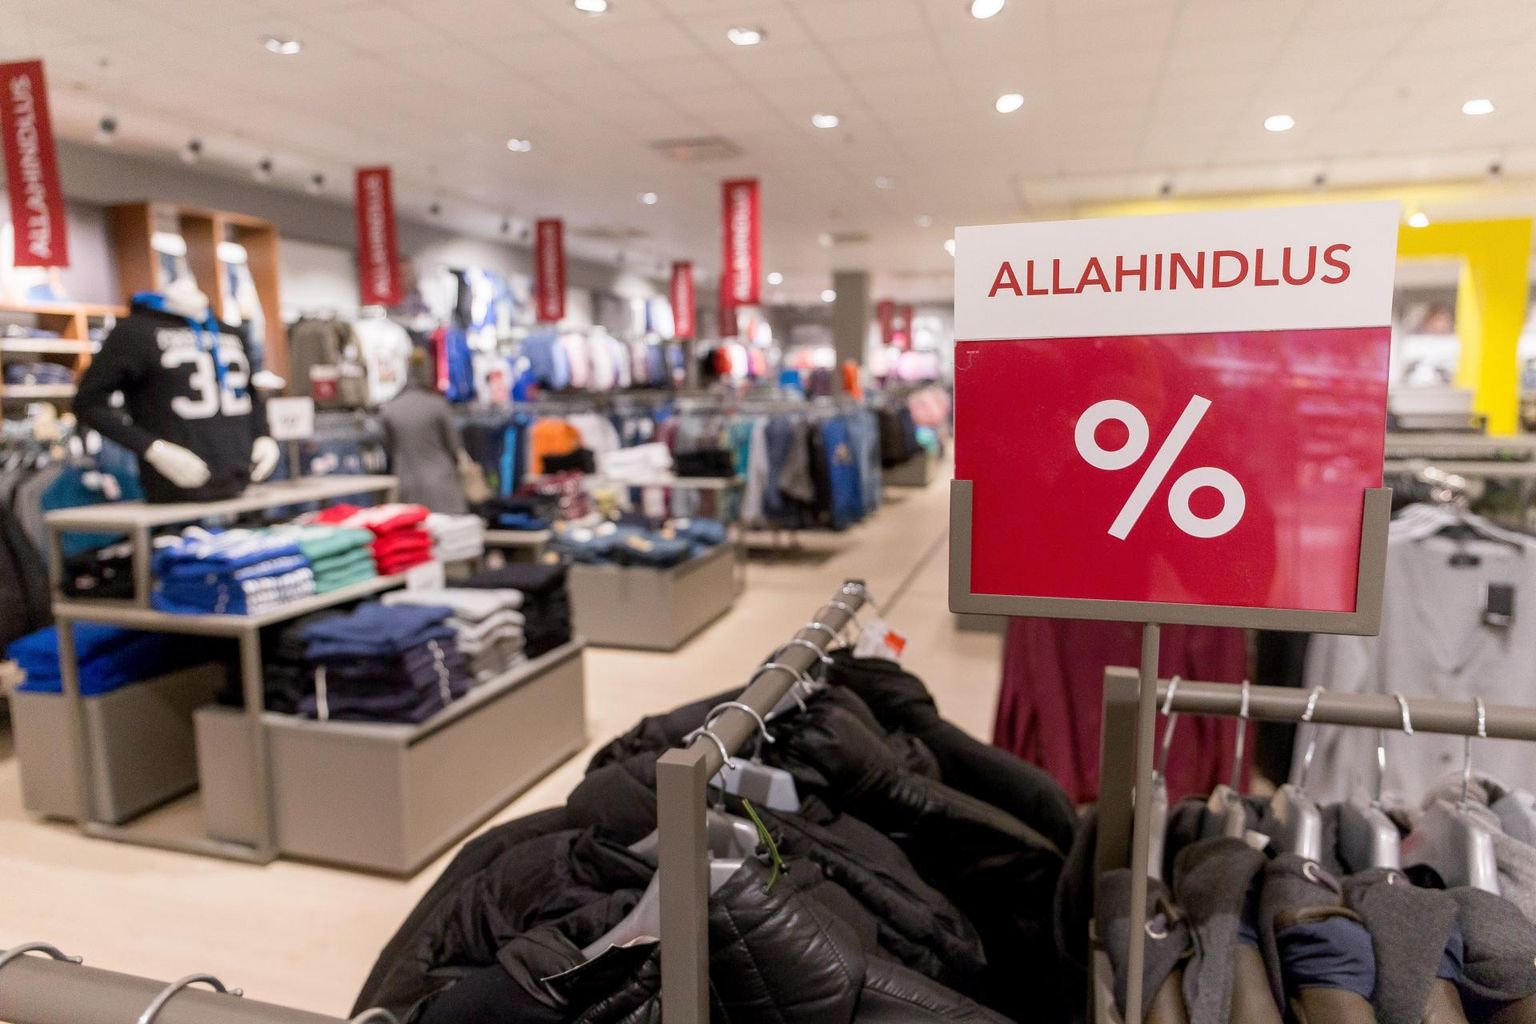 Eesti inimesed on hakanud vähem rõivaid ja jalatseid ostma, mis võib olla märk säästude ammendumisest.